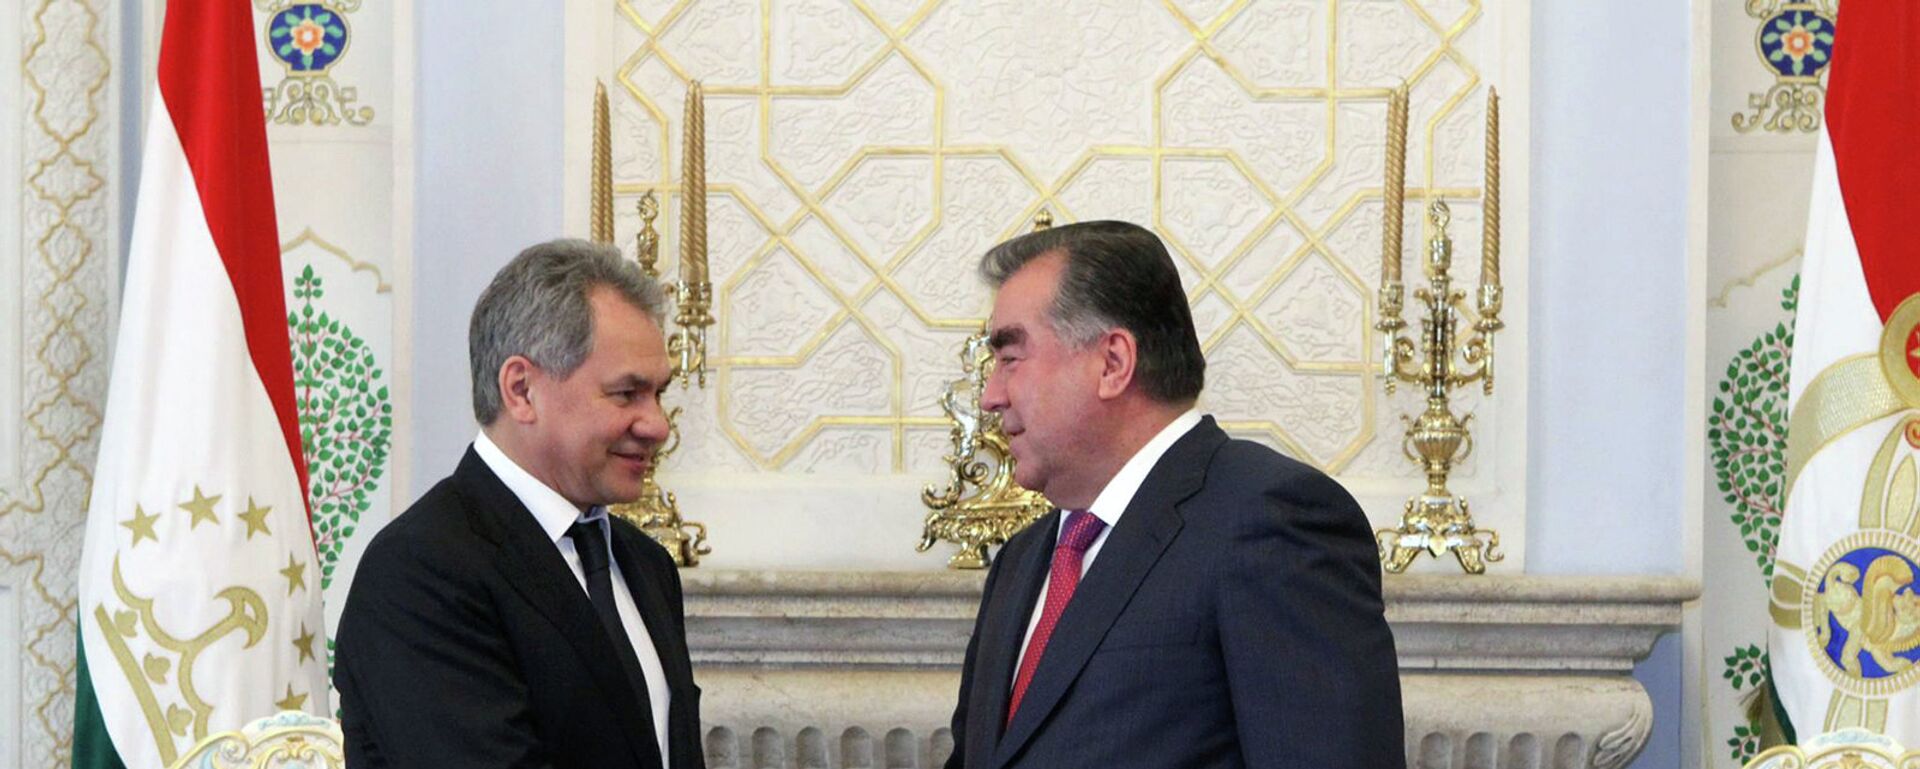 Эмомали Рахмон на встрече с Сергеем Шойгу в Душанбе 4 июня 2015 года - Sputnik Таджикистан, 1920, 27.04.2021